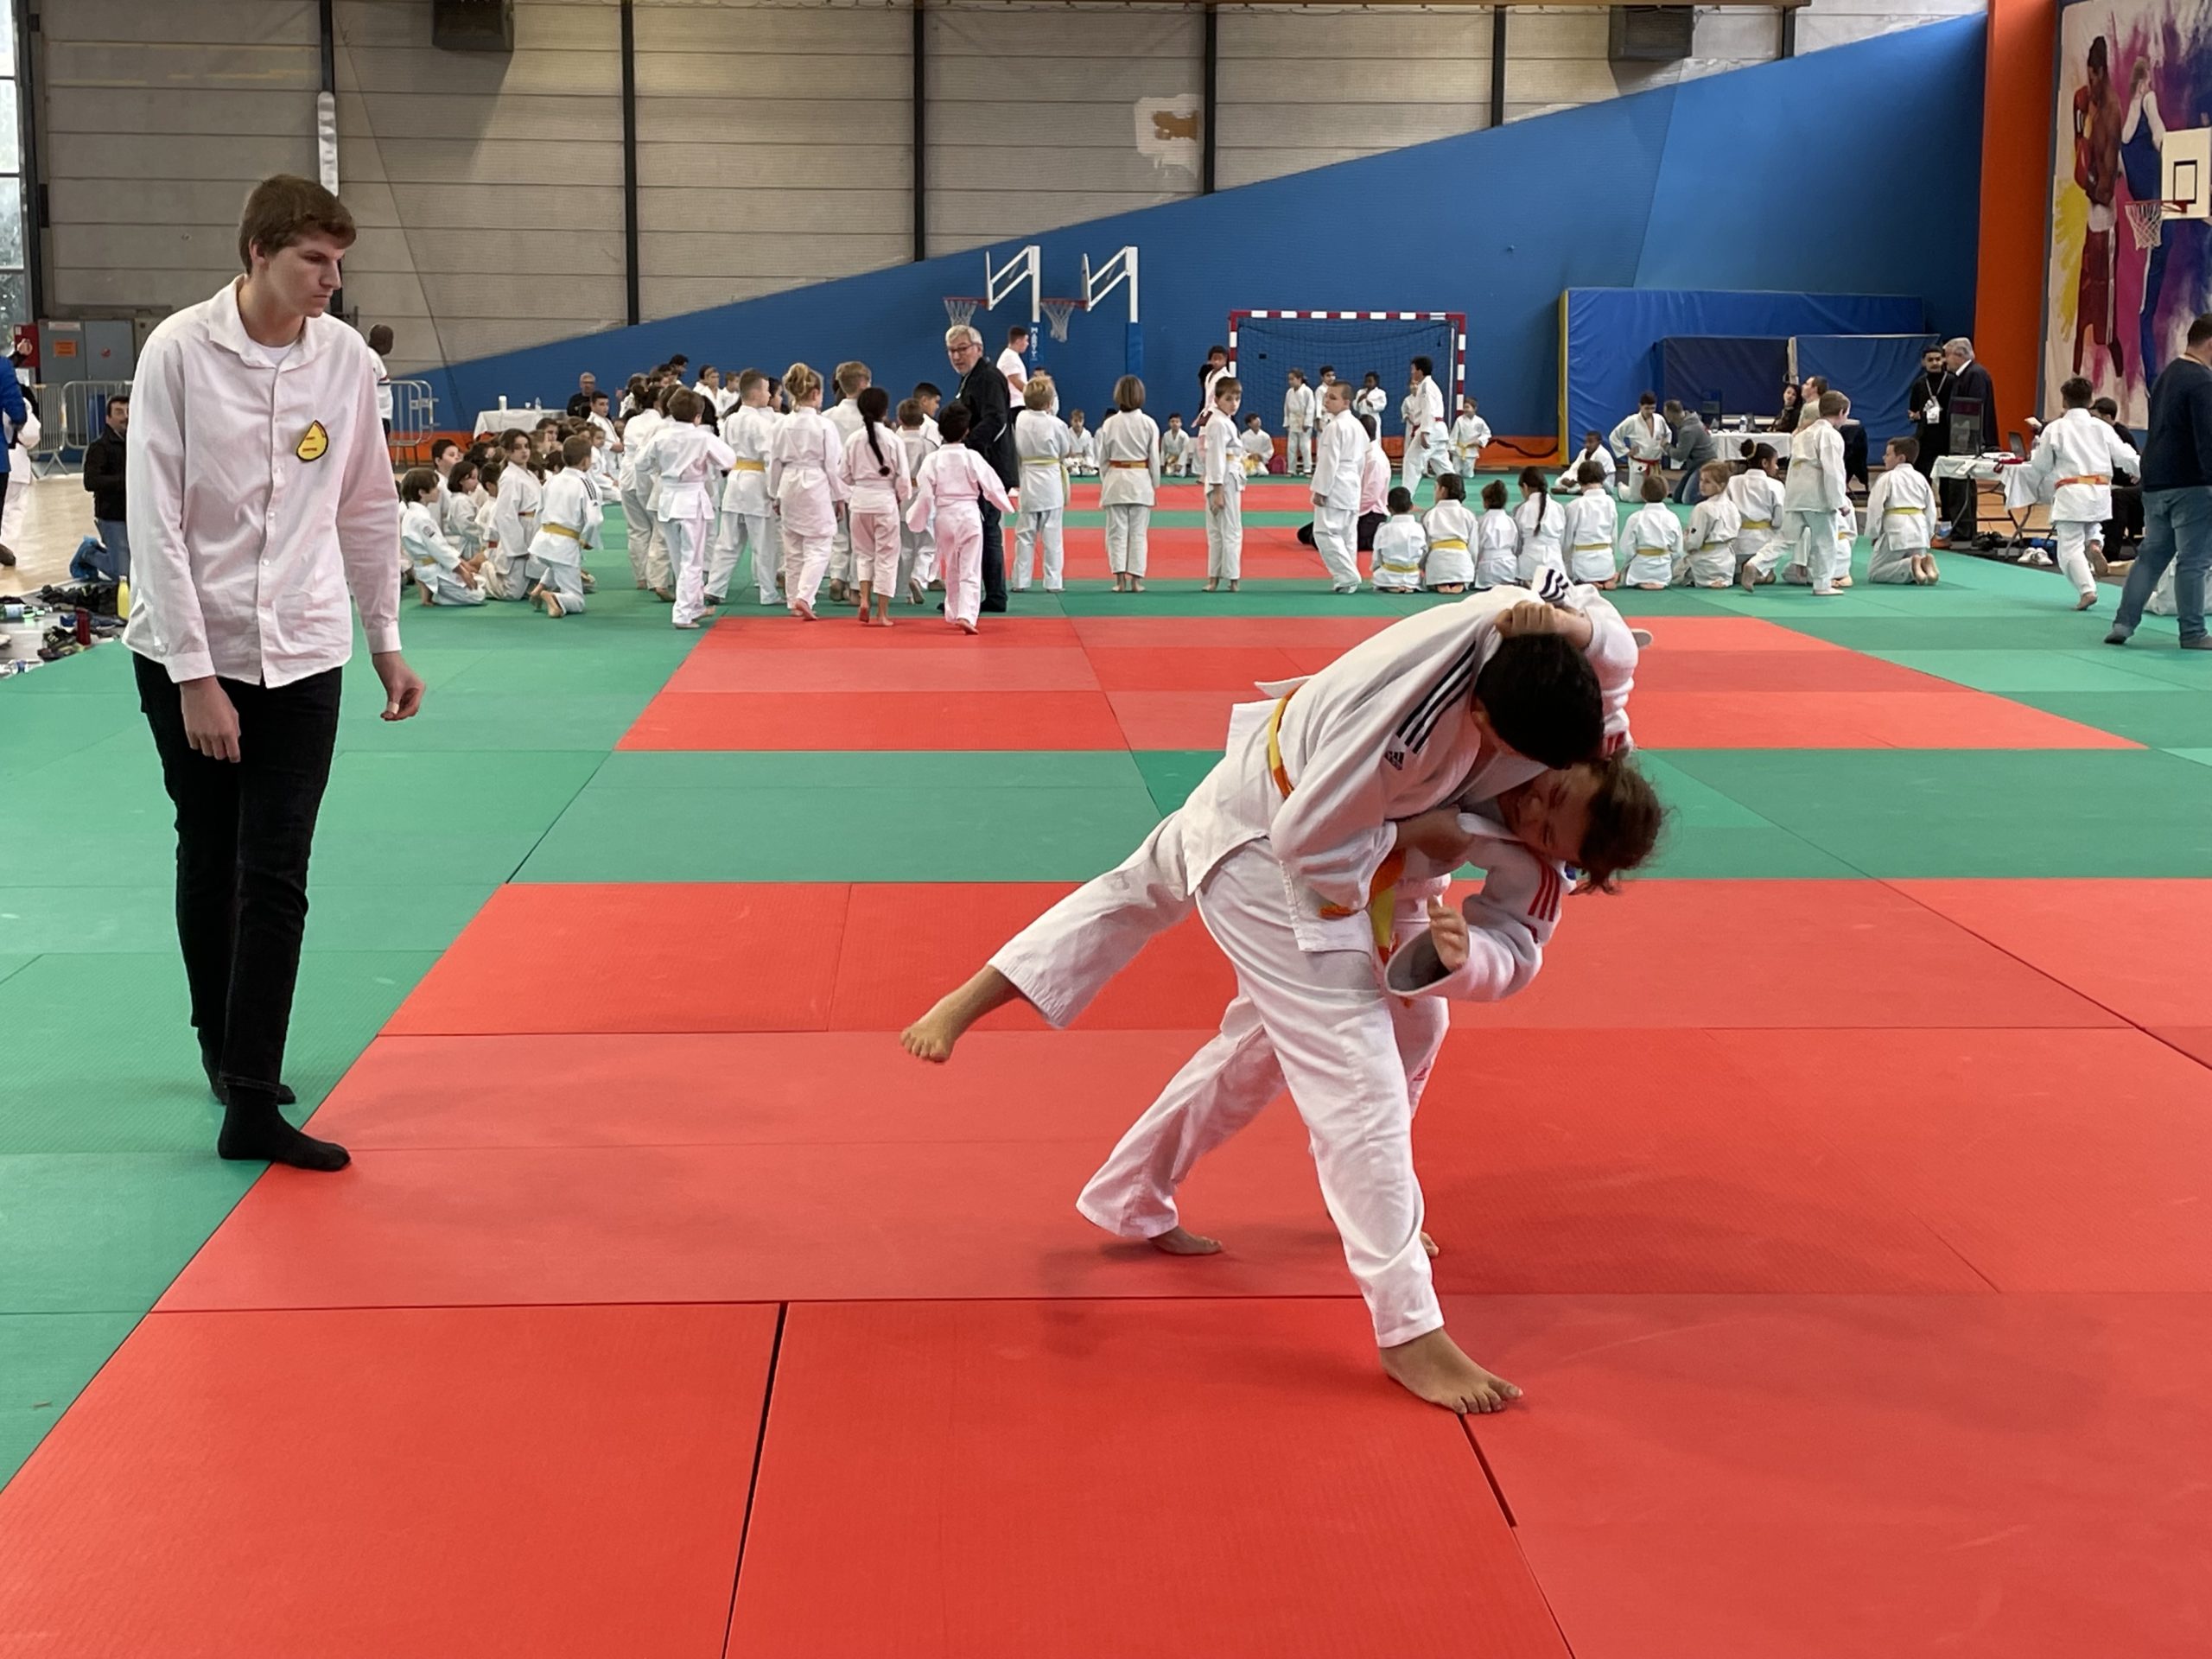 Salle comble pour le gala de judo